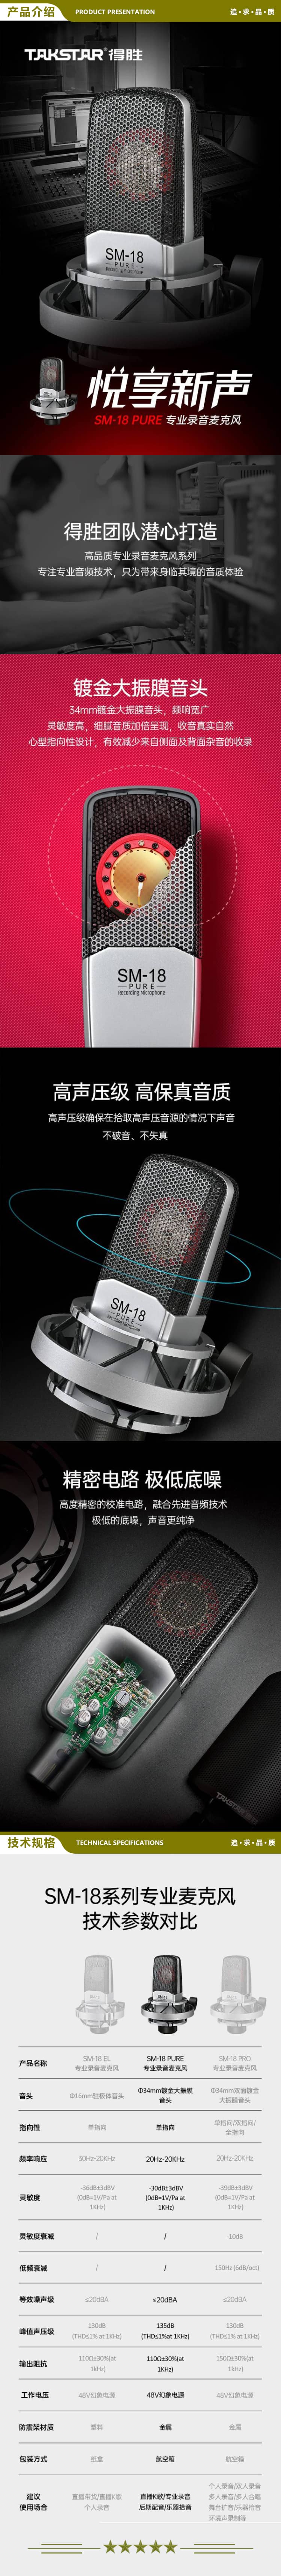 得胜 TAKSTAR SM-18 PURE 大振膜专业录音麦克风 网络直播唱K歌录音话筒 2.jpg